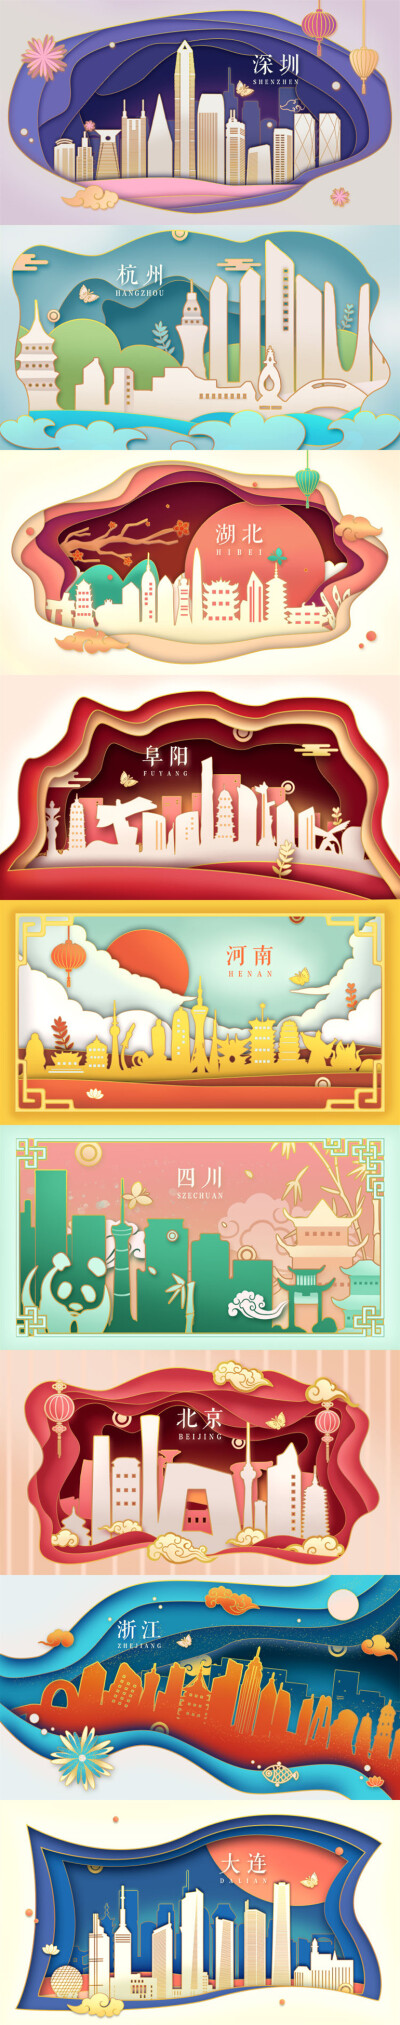 新中式国内知名旅游城市地标文化建筑剪影插画海报设计素材